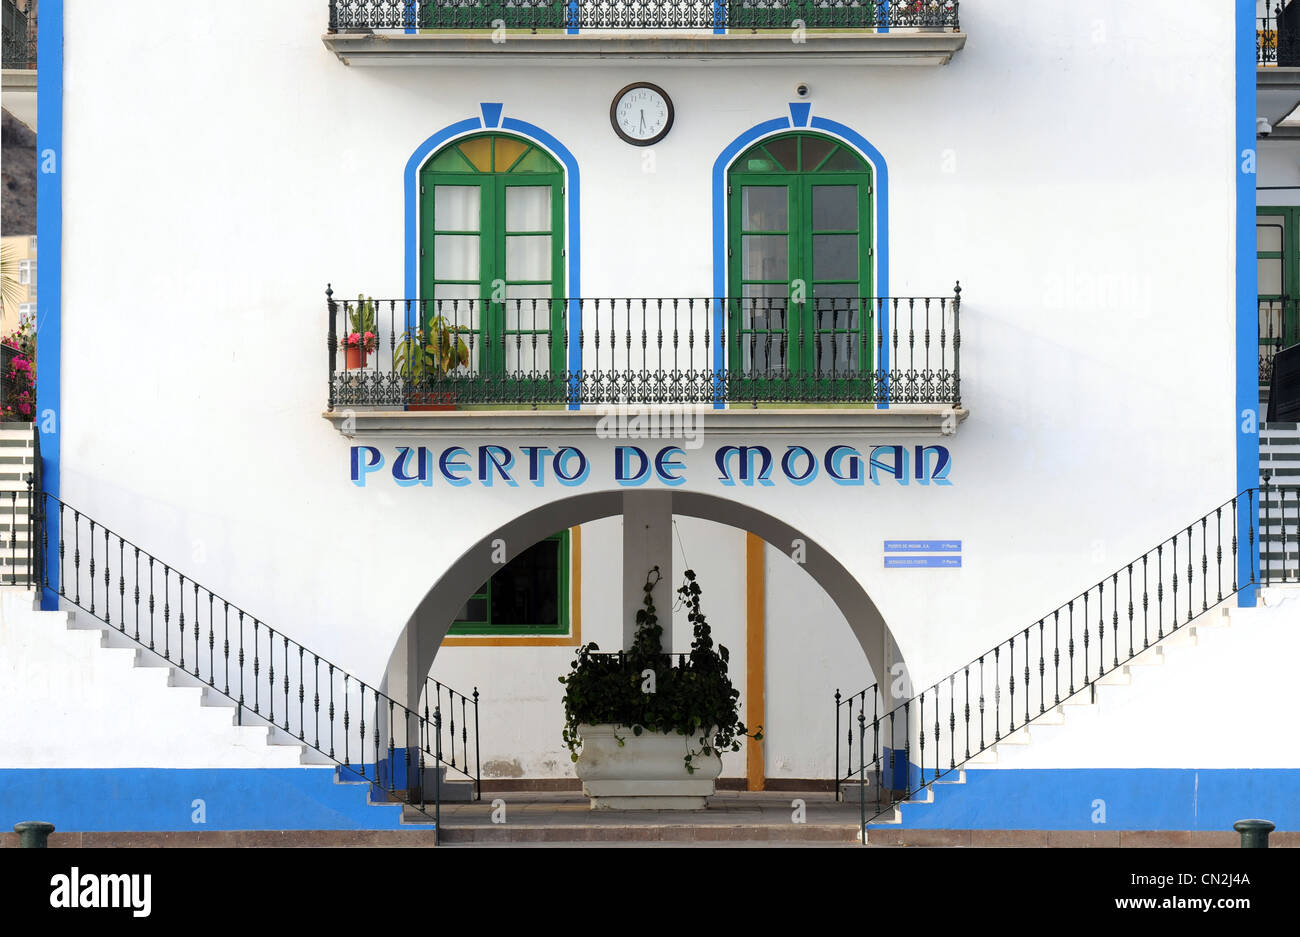 Puerto de Mogán, Puerto de Mogan, Gran Canaria, Canary Islands Stock Photo